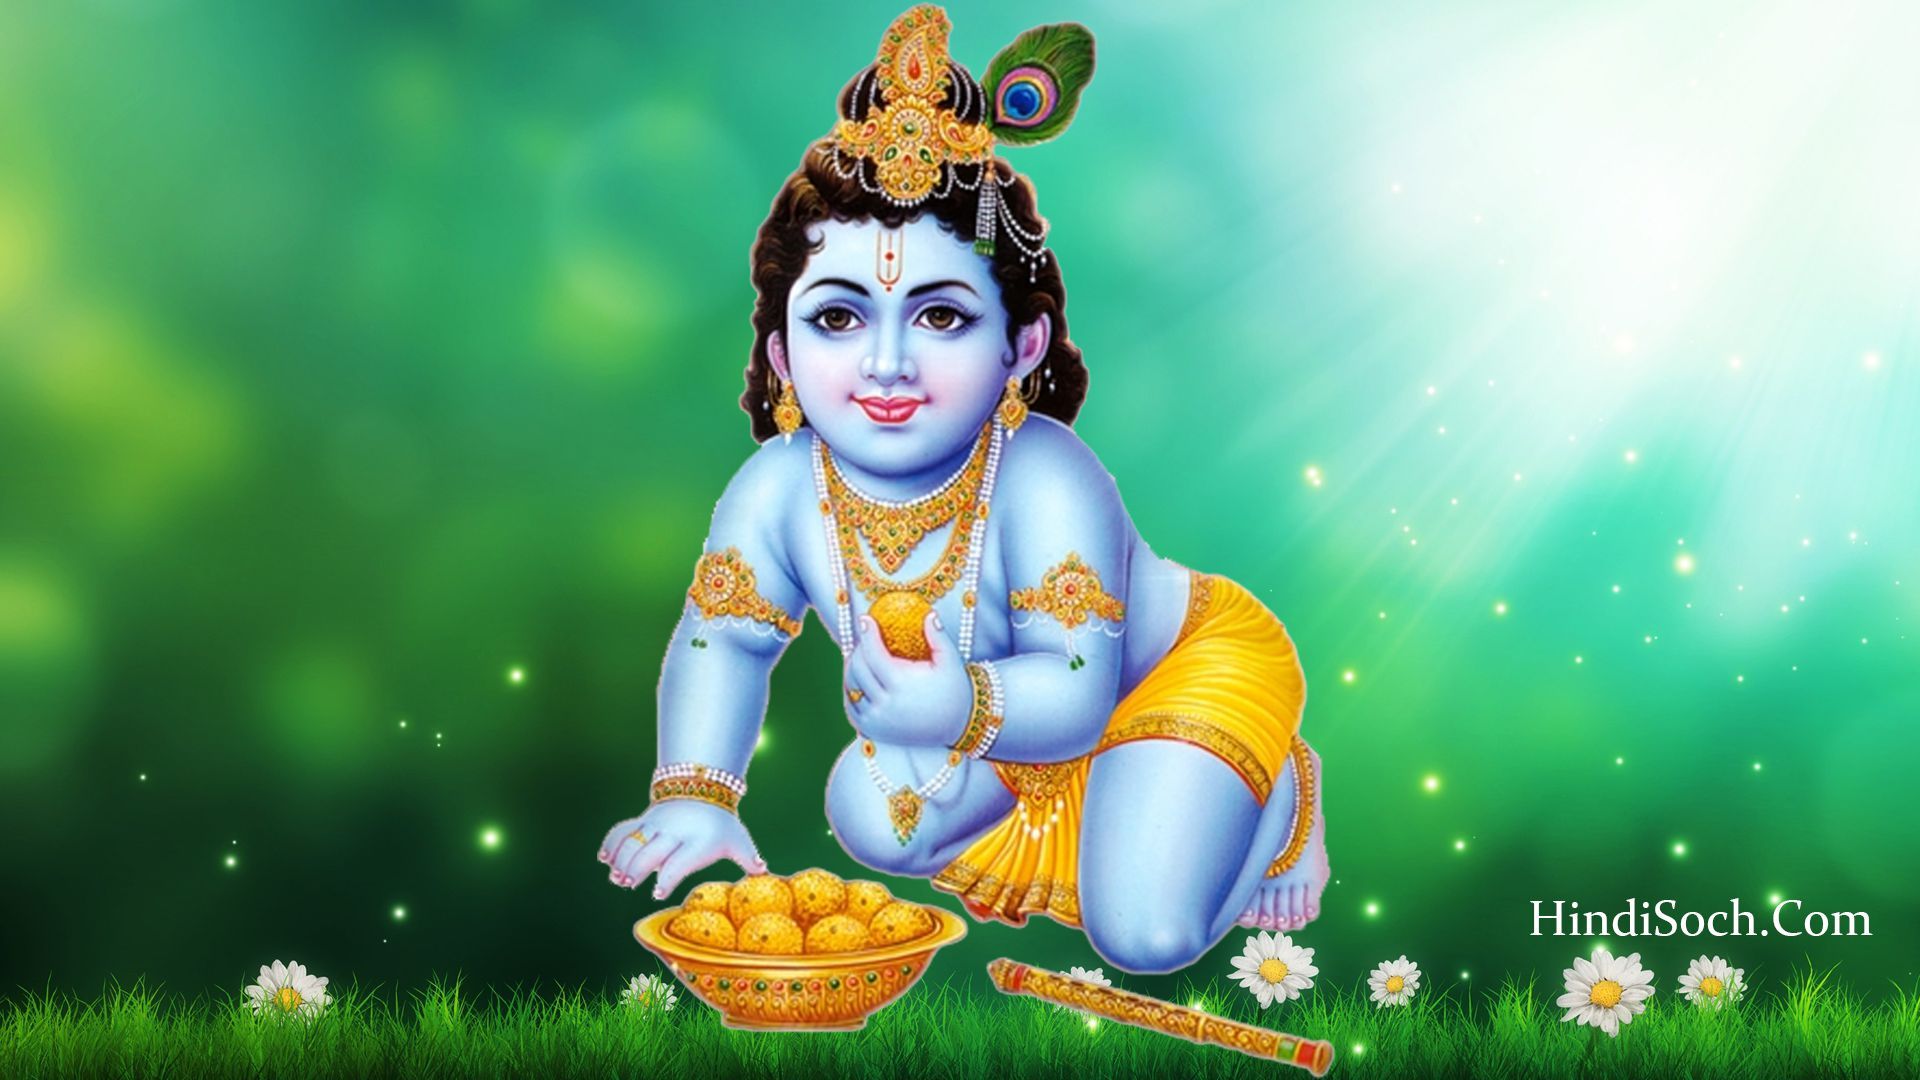 Bhagwan Lord Krishna Image. Shri God Krishna Image 2020